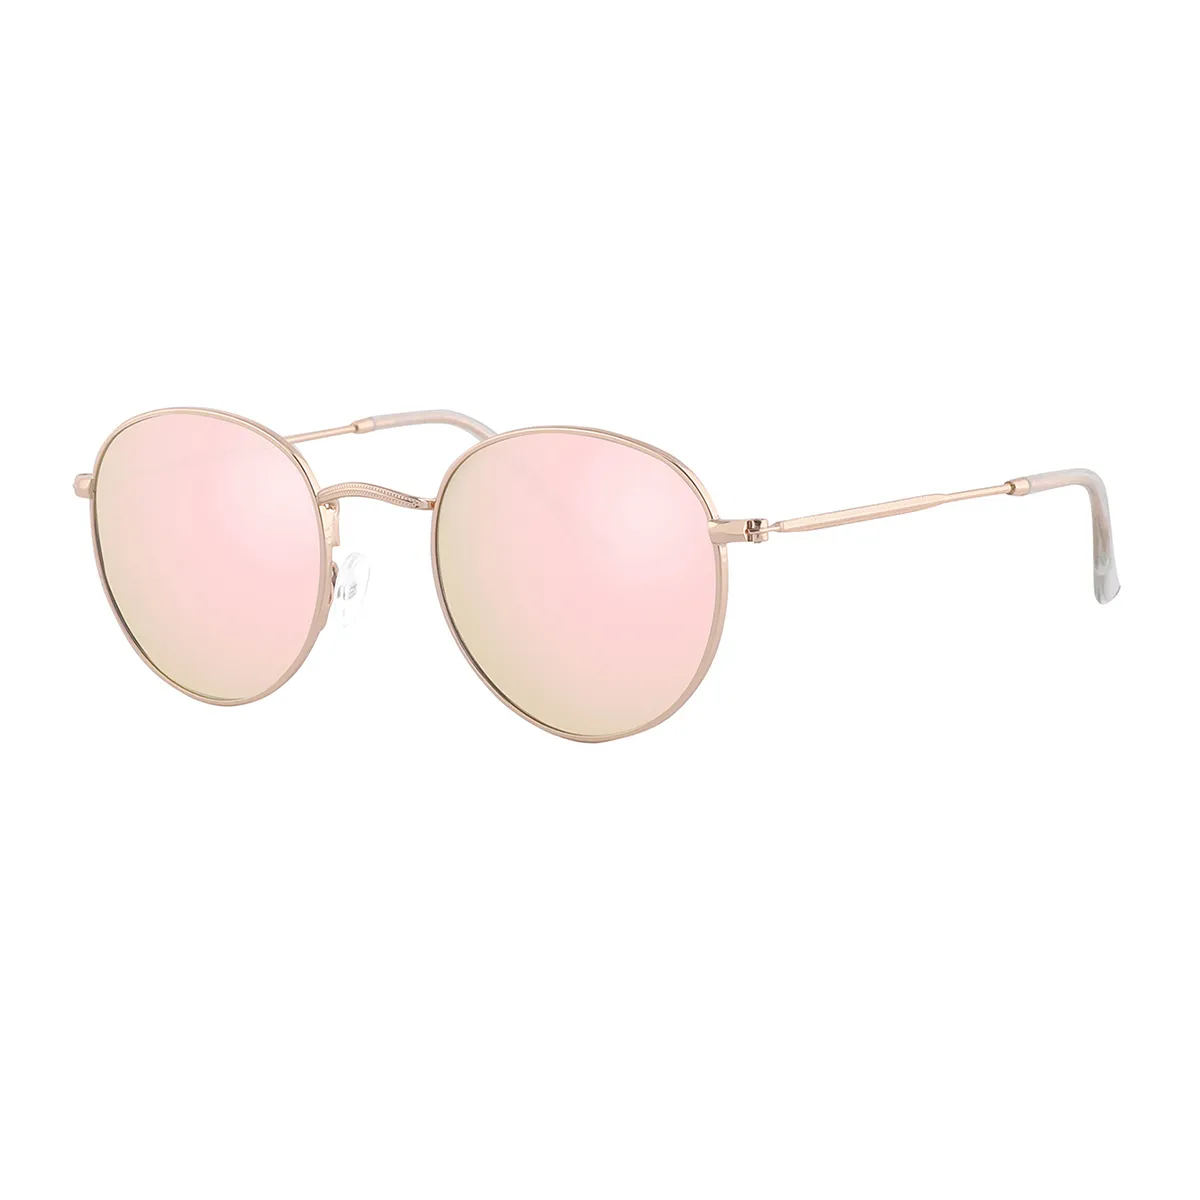 Baer - Round Gold/3 Sunglasses for Men & Women